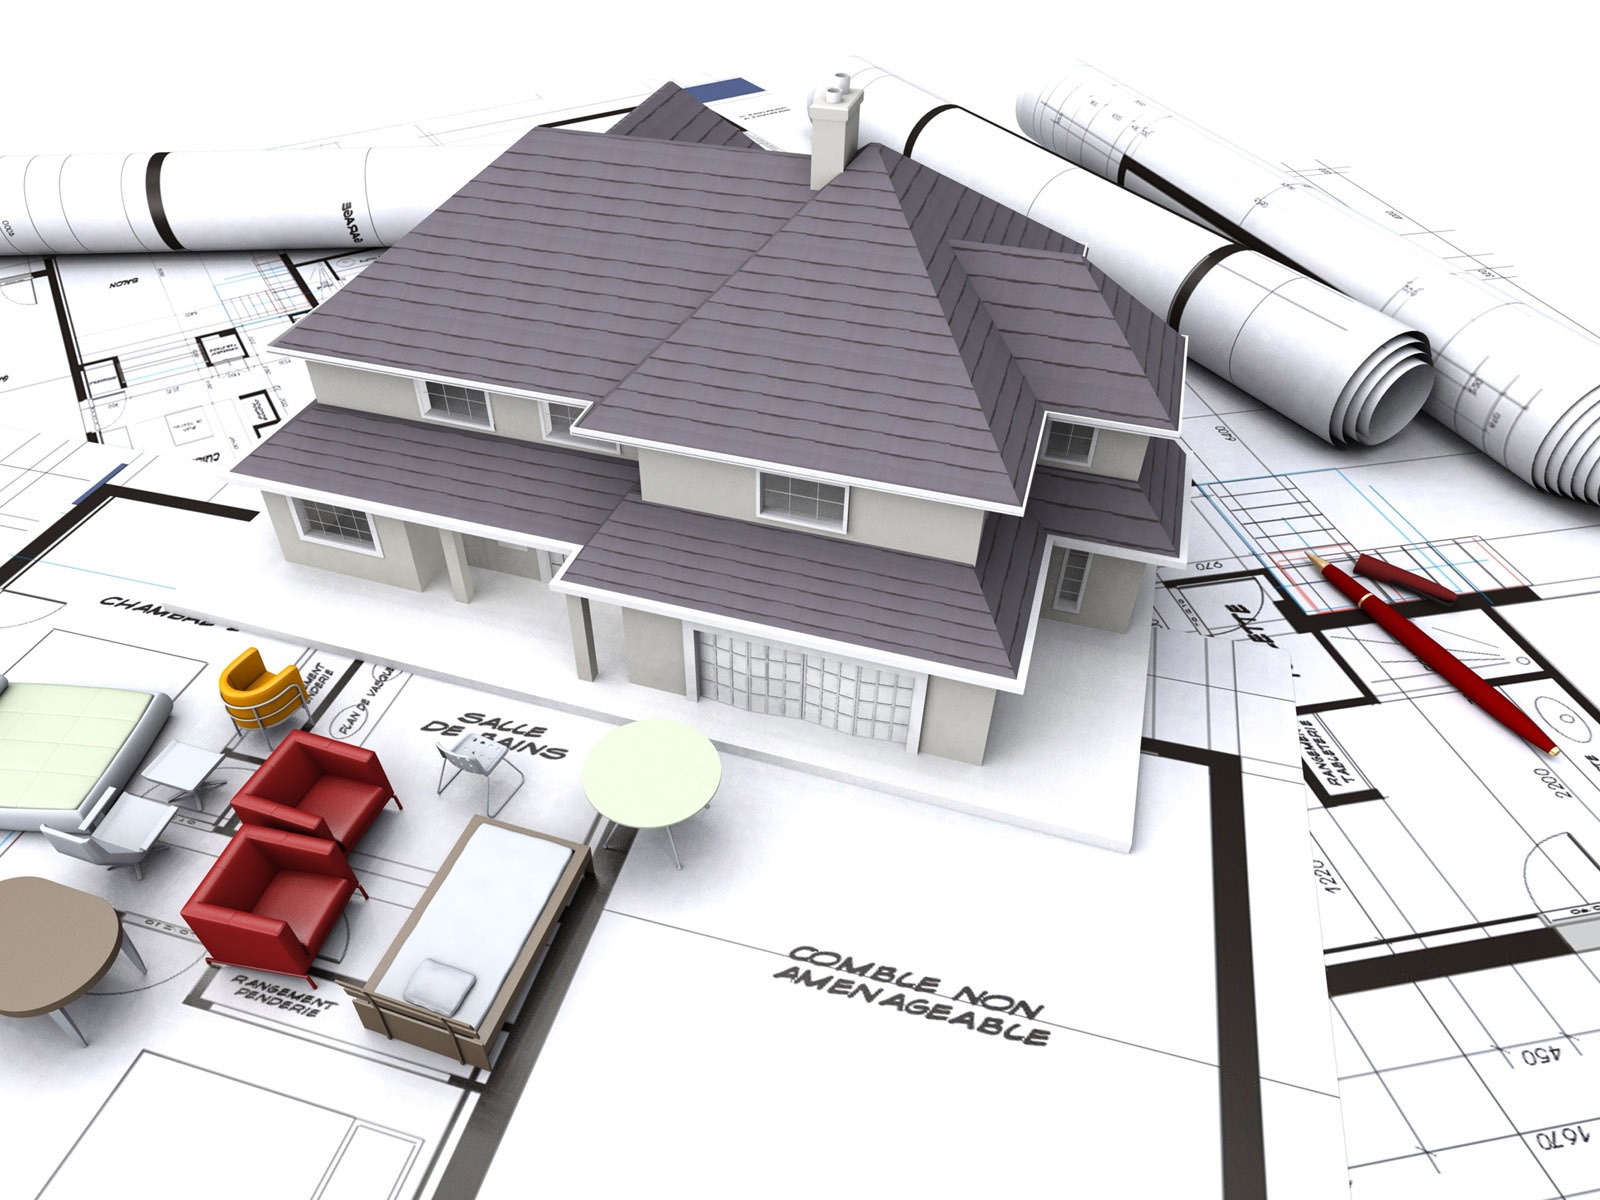 Tải Mẫu đơn xin cấp phép xây dựng nhà ở, công trình, dự án